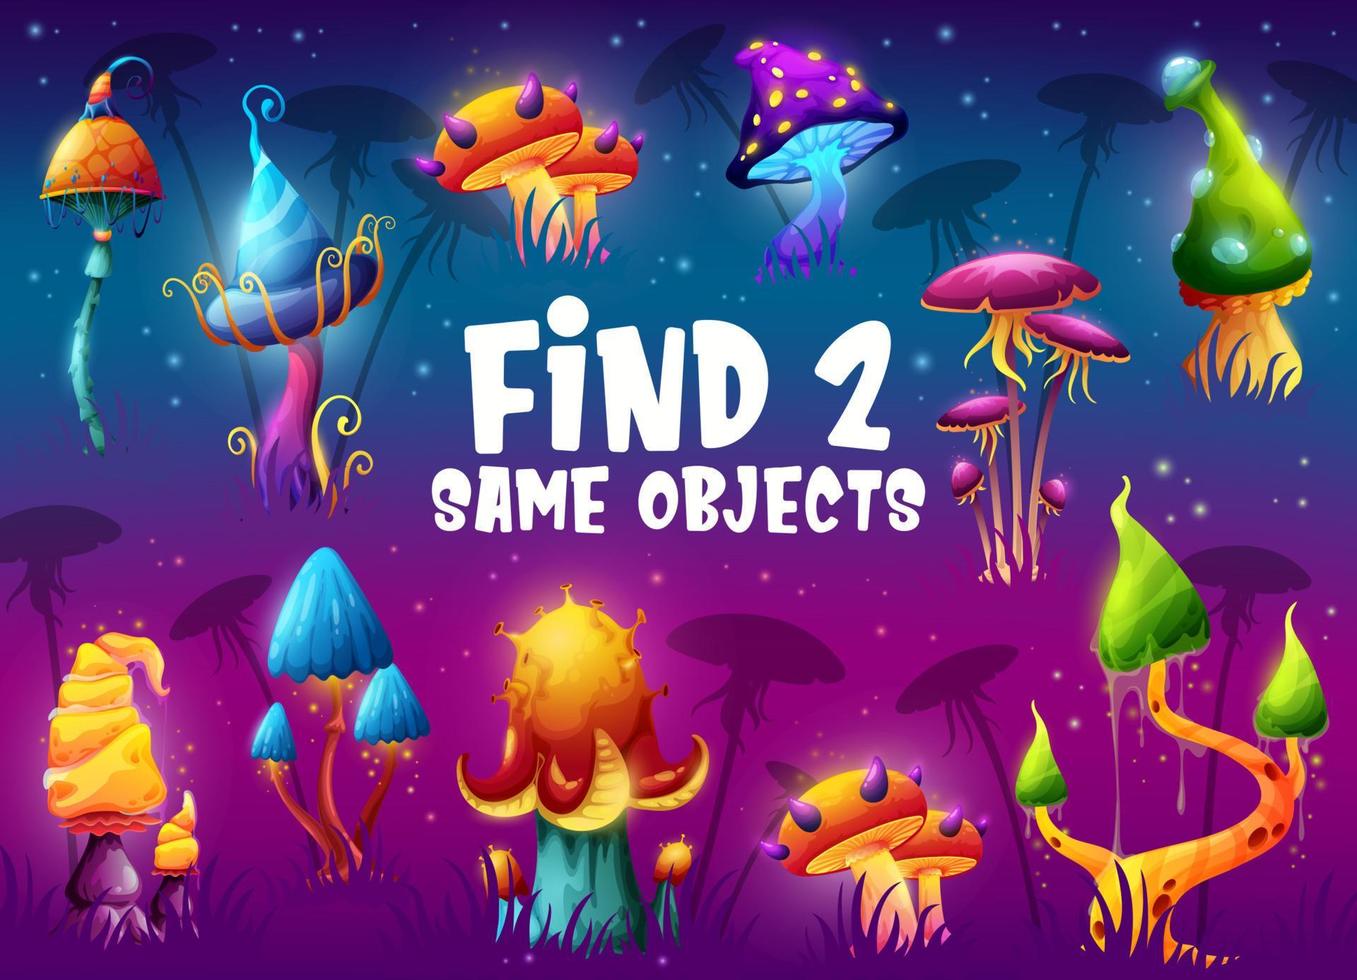 Finden Sie zwei gleiche Magic Mushrooms Arbeitsblätter für Kinderspiele vektor